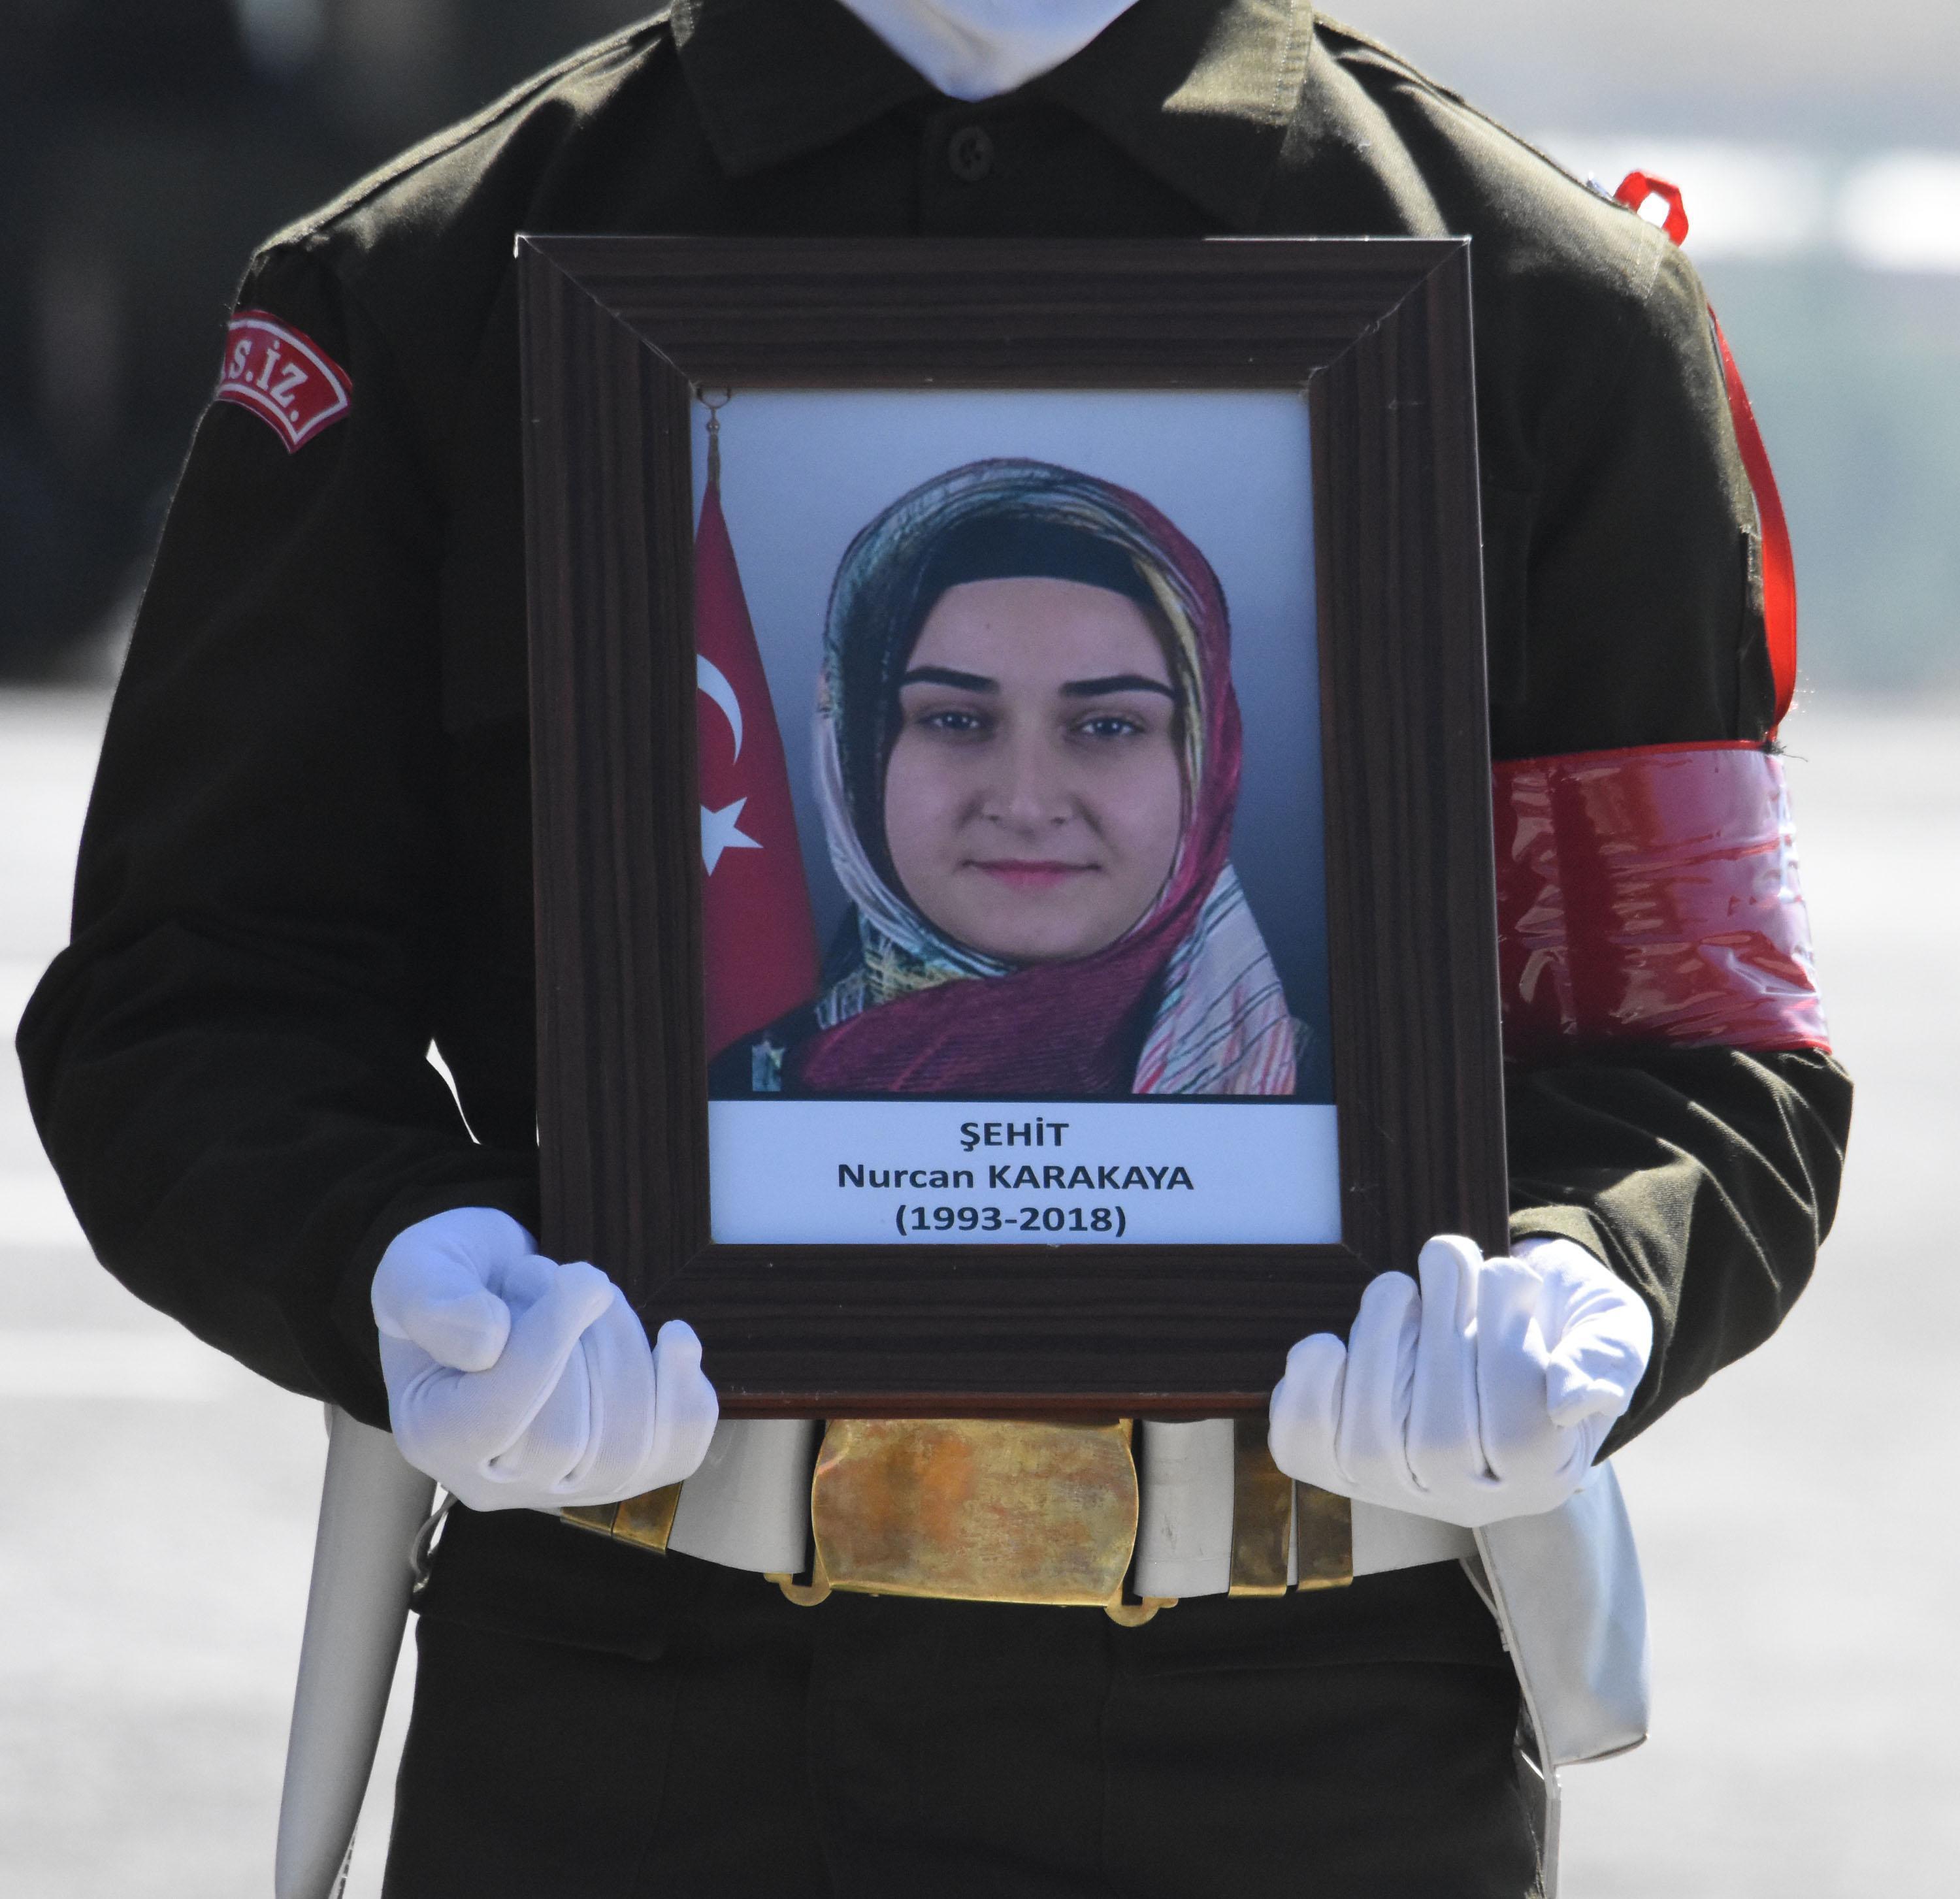 Hakkaride PKKnın şehit ettiği anne ve bebeğine tören